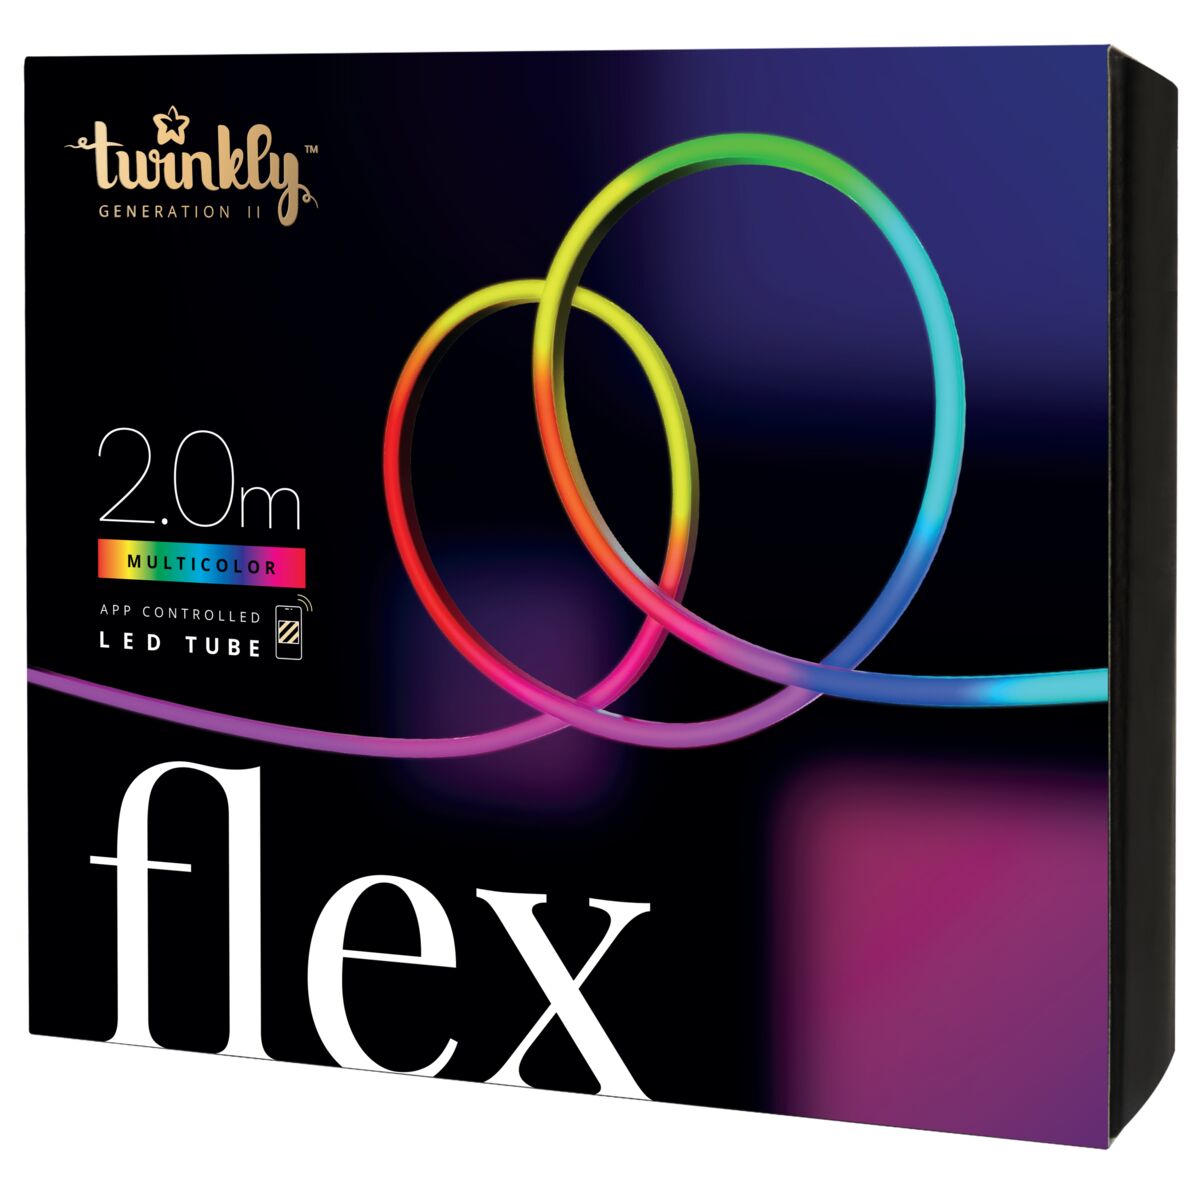 TWINKLY FLEX Starter Kit 2M - 192 LEDs RGB LightApp-Controlled Flexible Light Tube Gen II - White